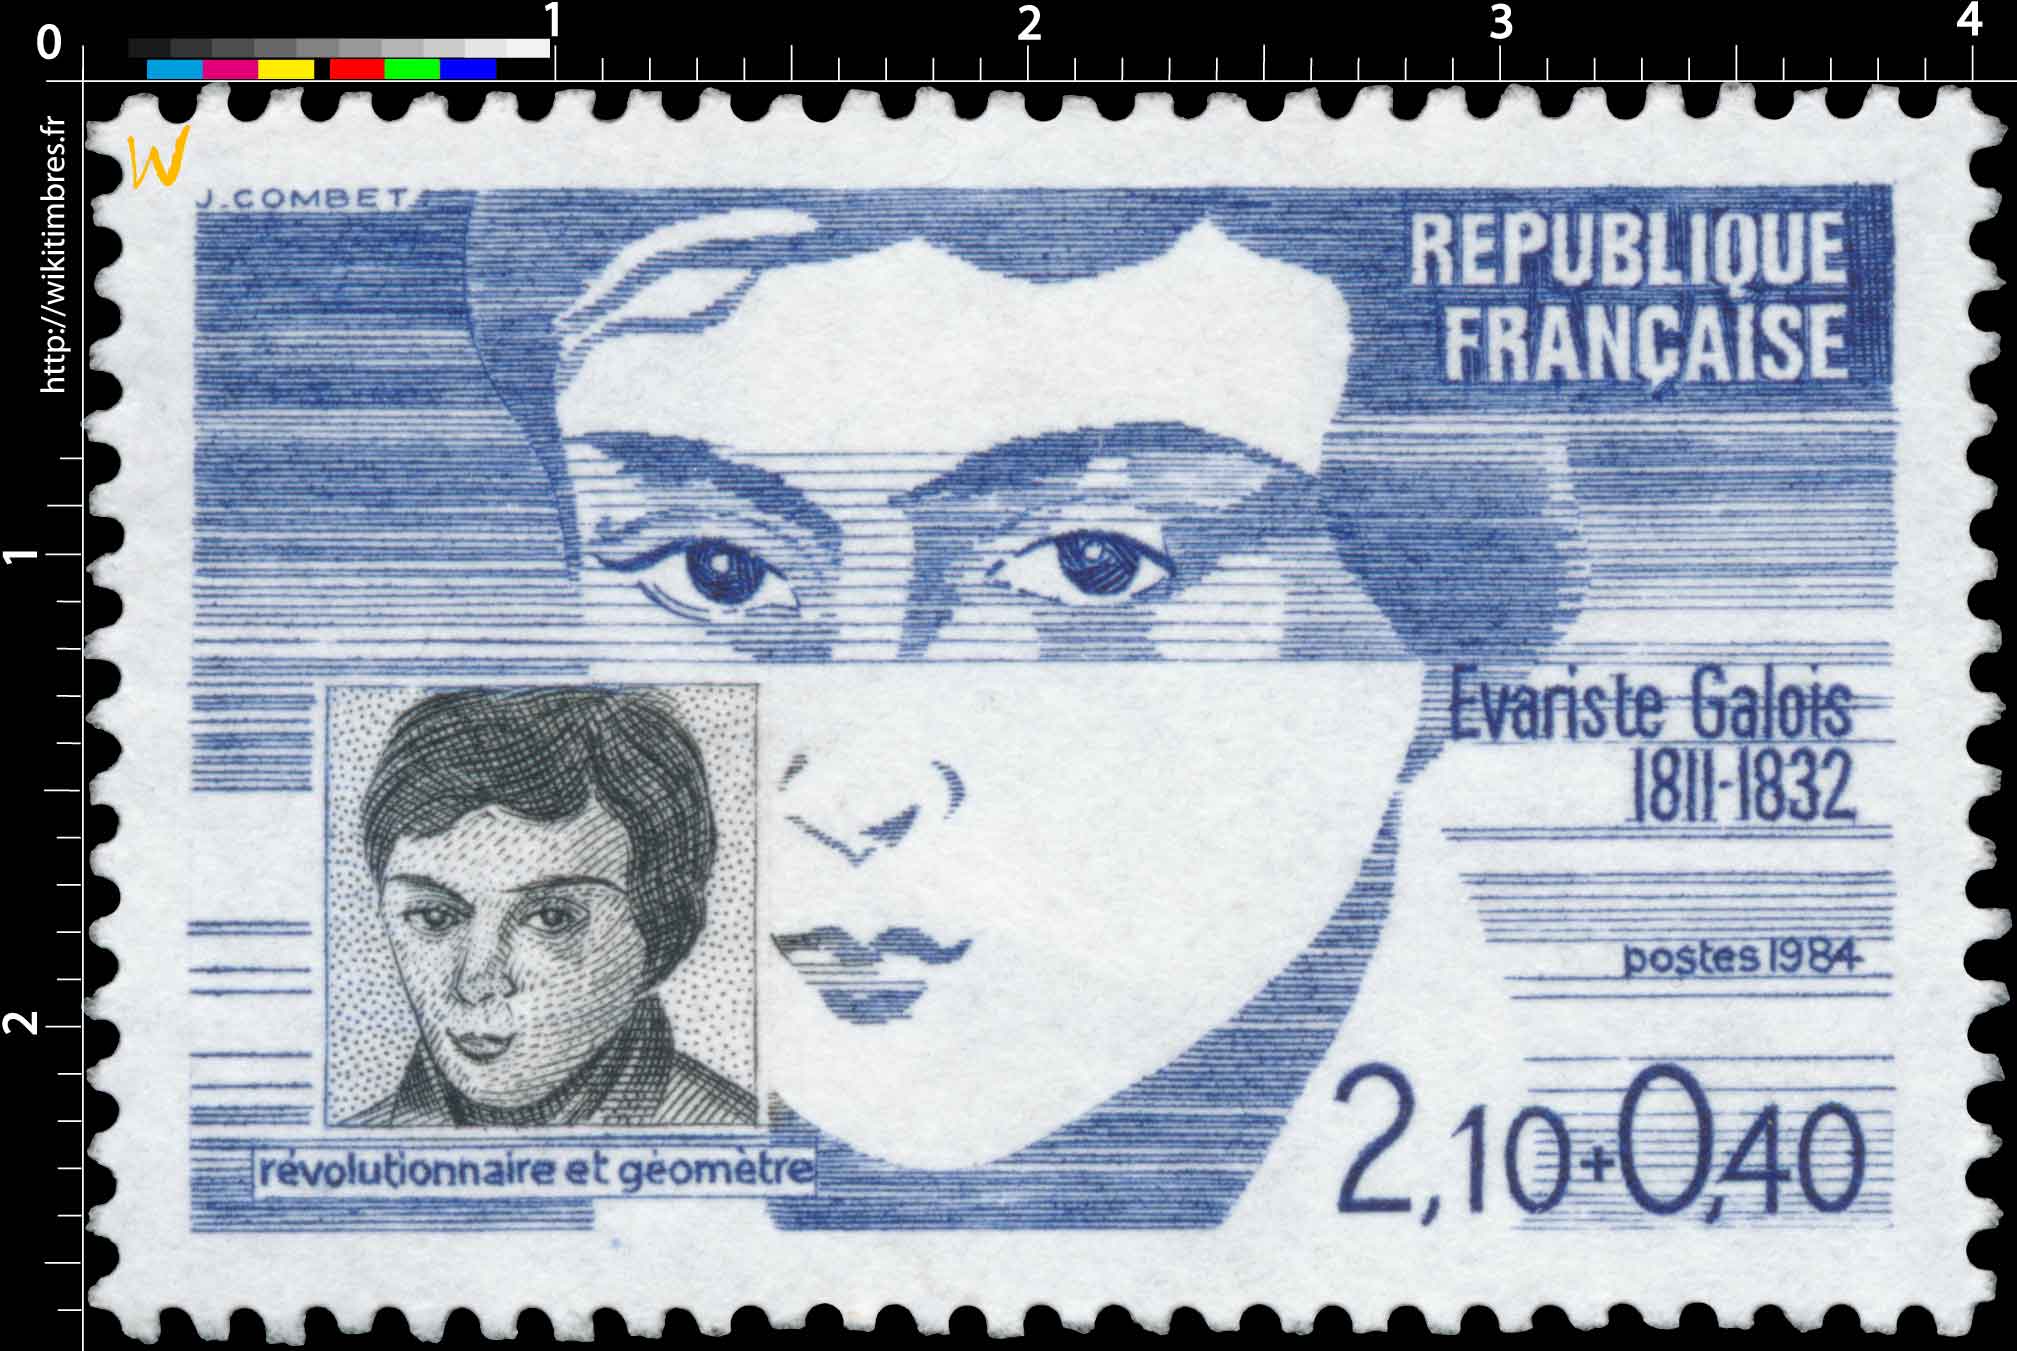 1984 Évariste Galois 1811-1832 révolutionnaire et géomètre